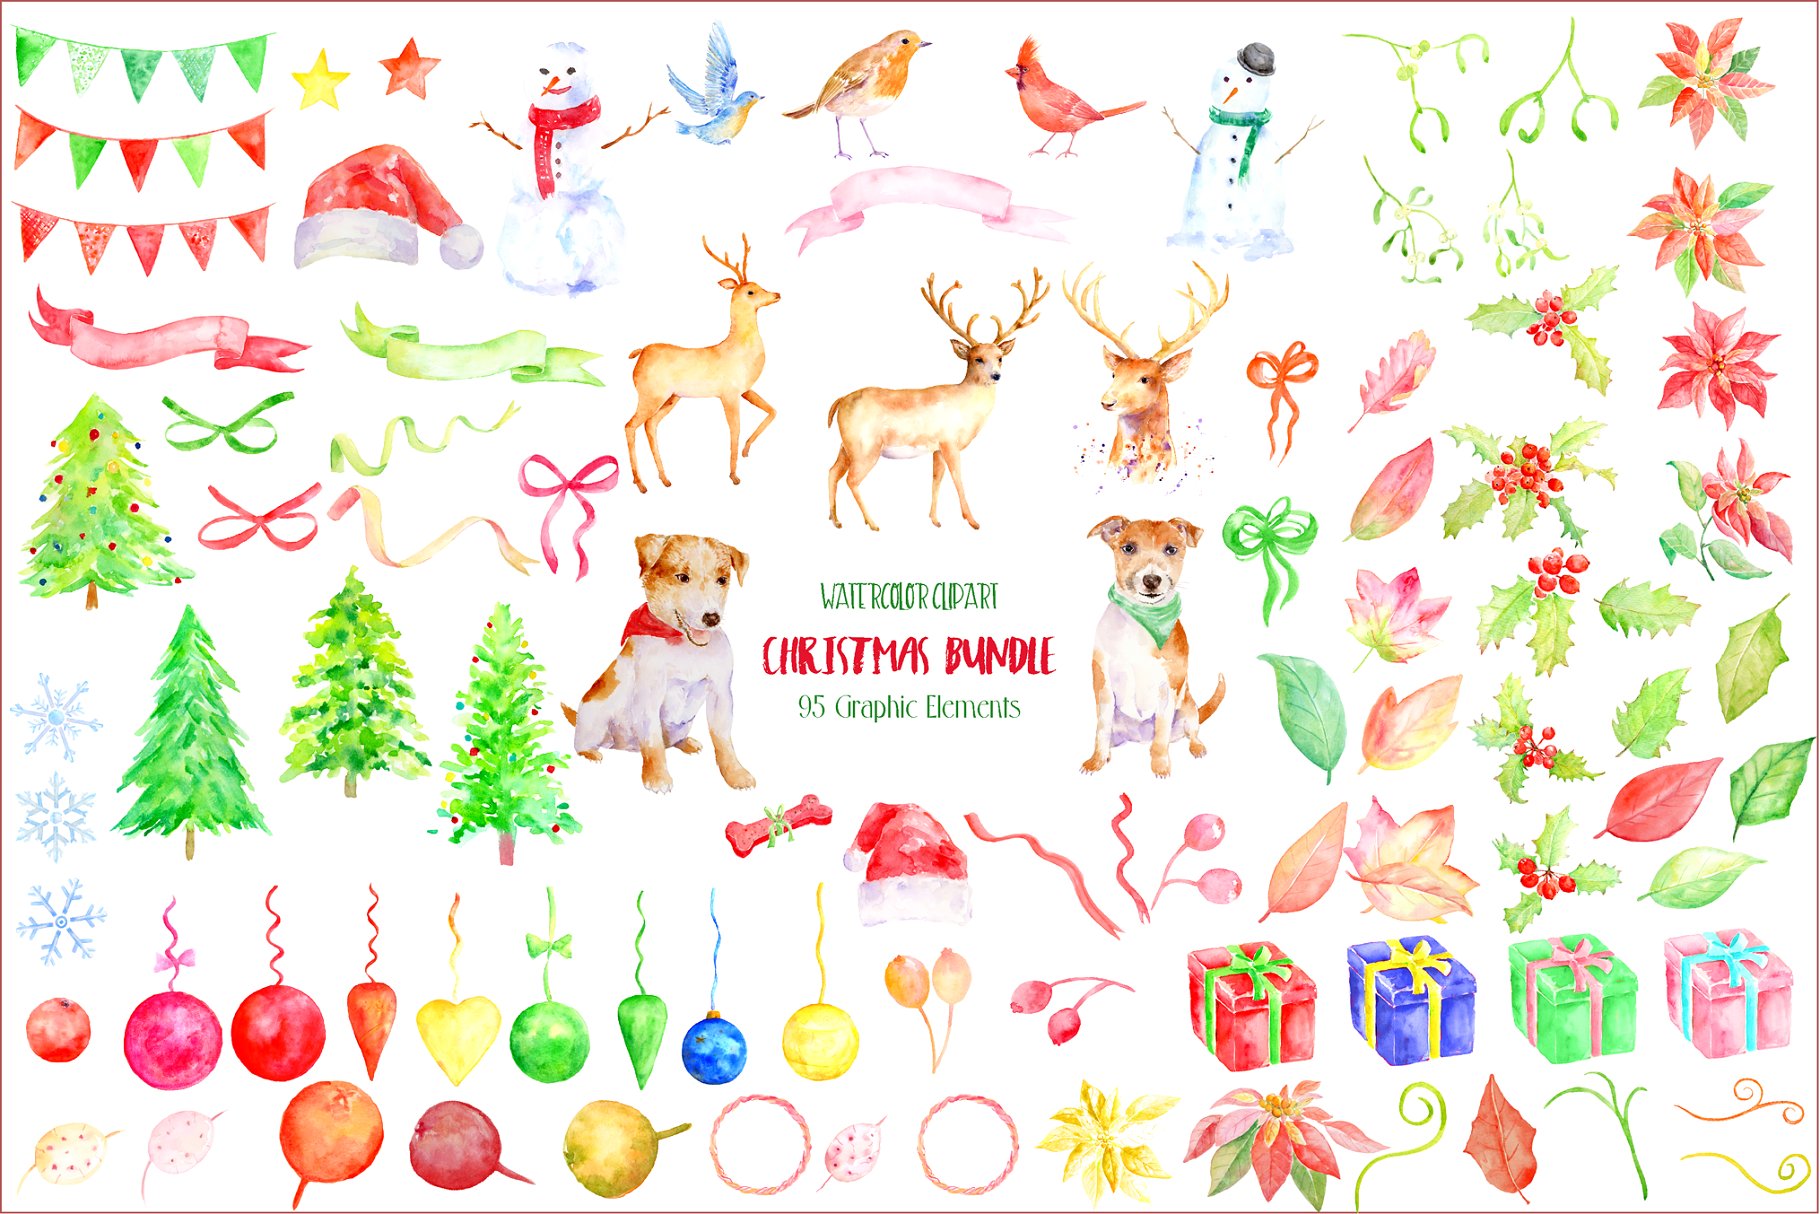 圣诞节主题水彩剪贴画合集 Christmas Clipart Bundle插图(3)